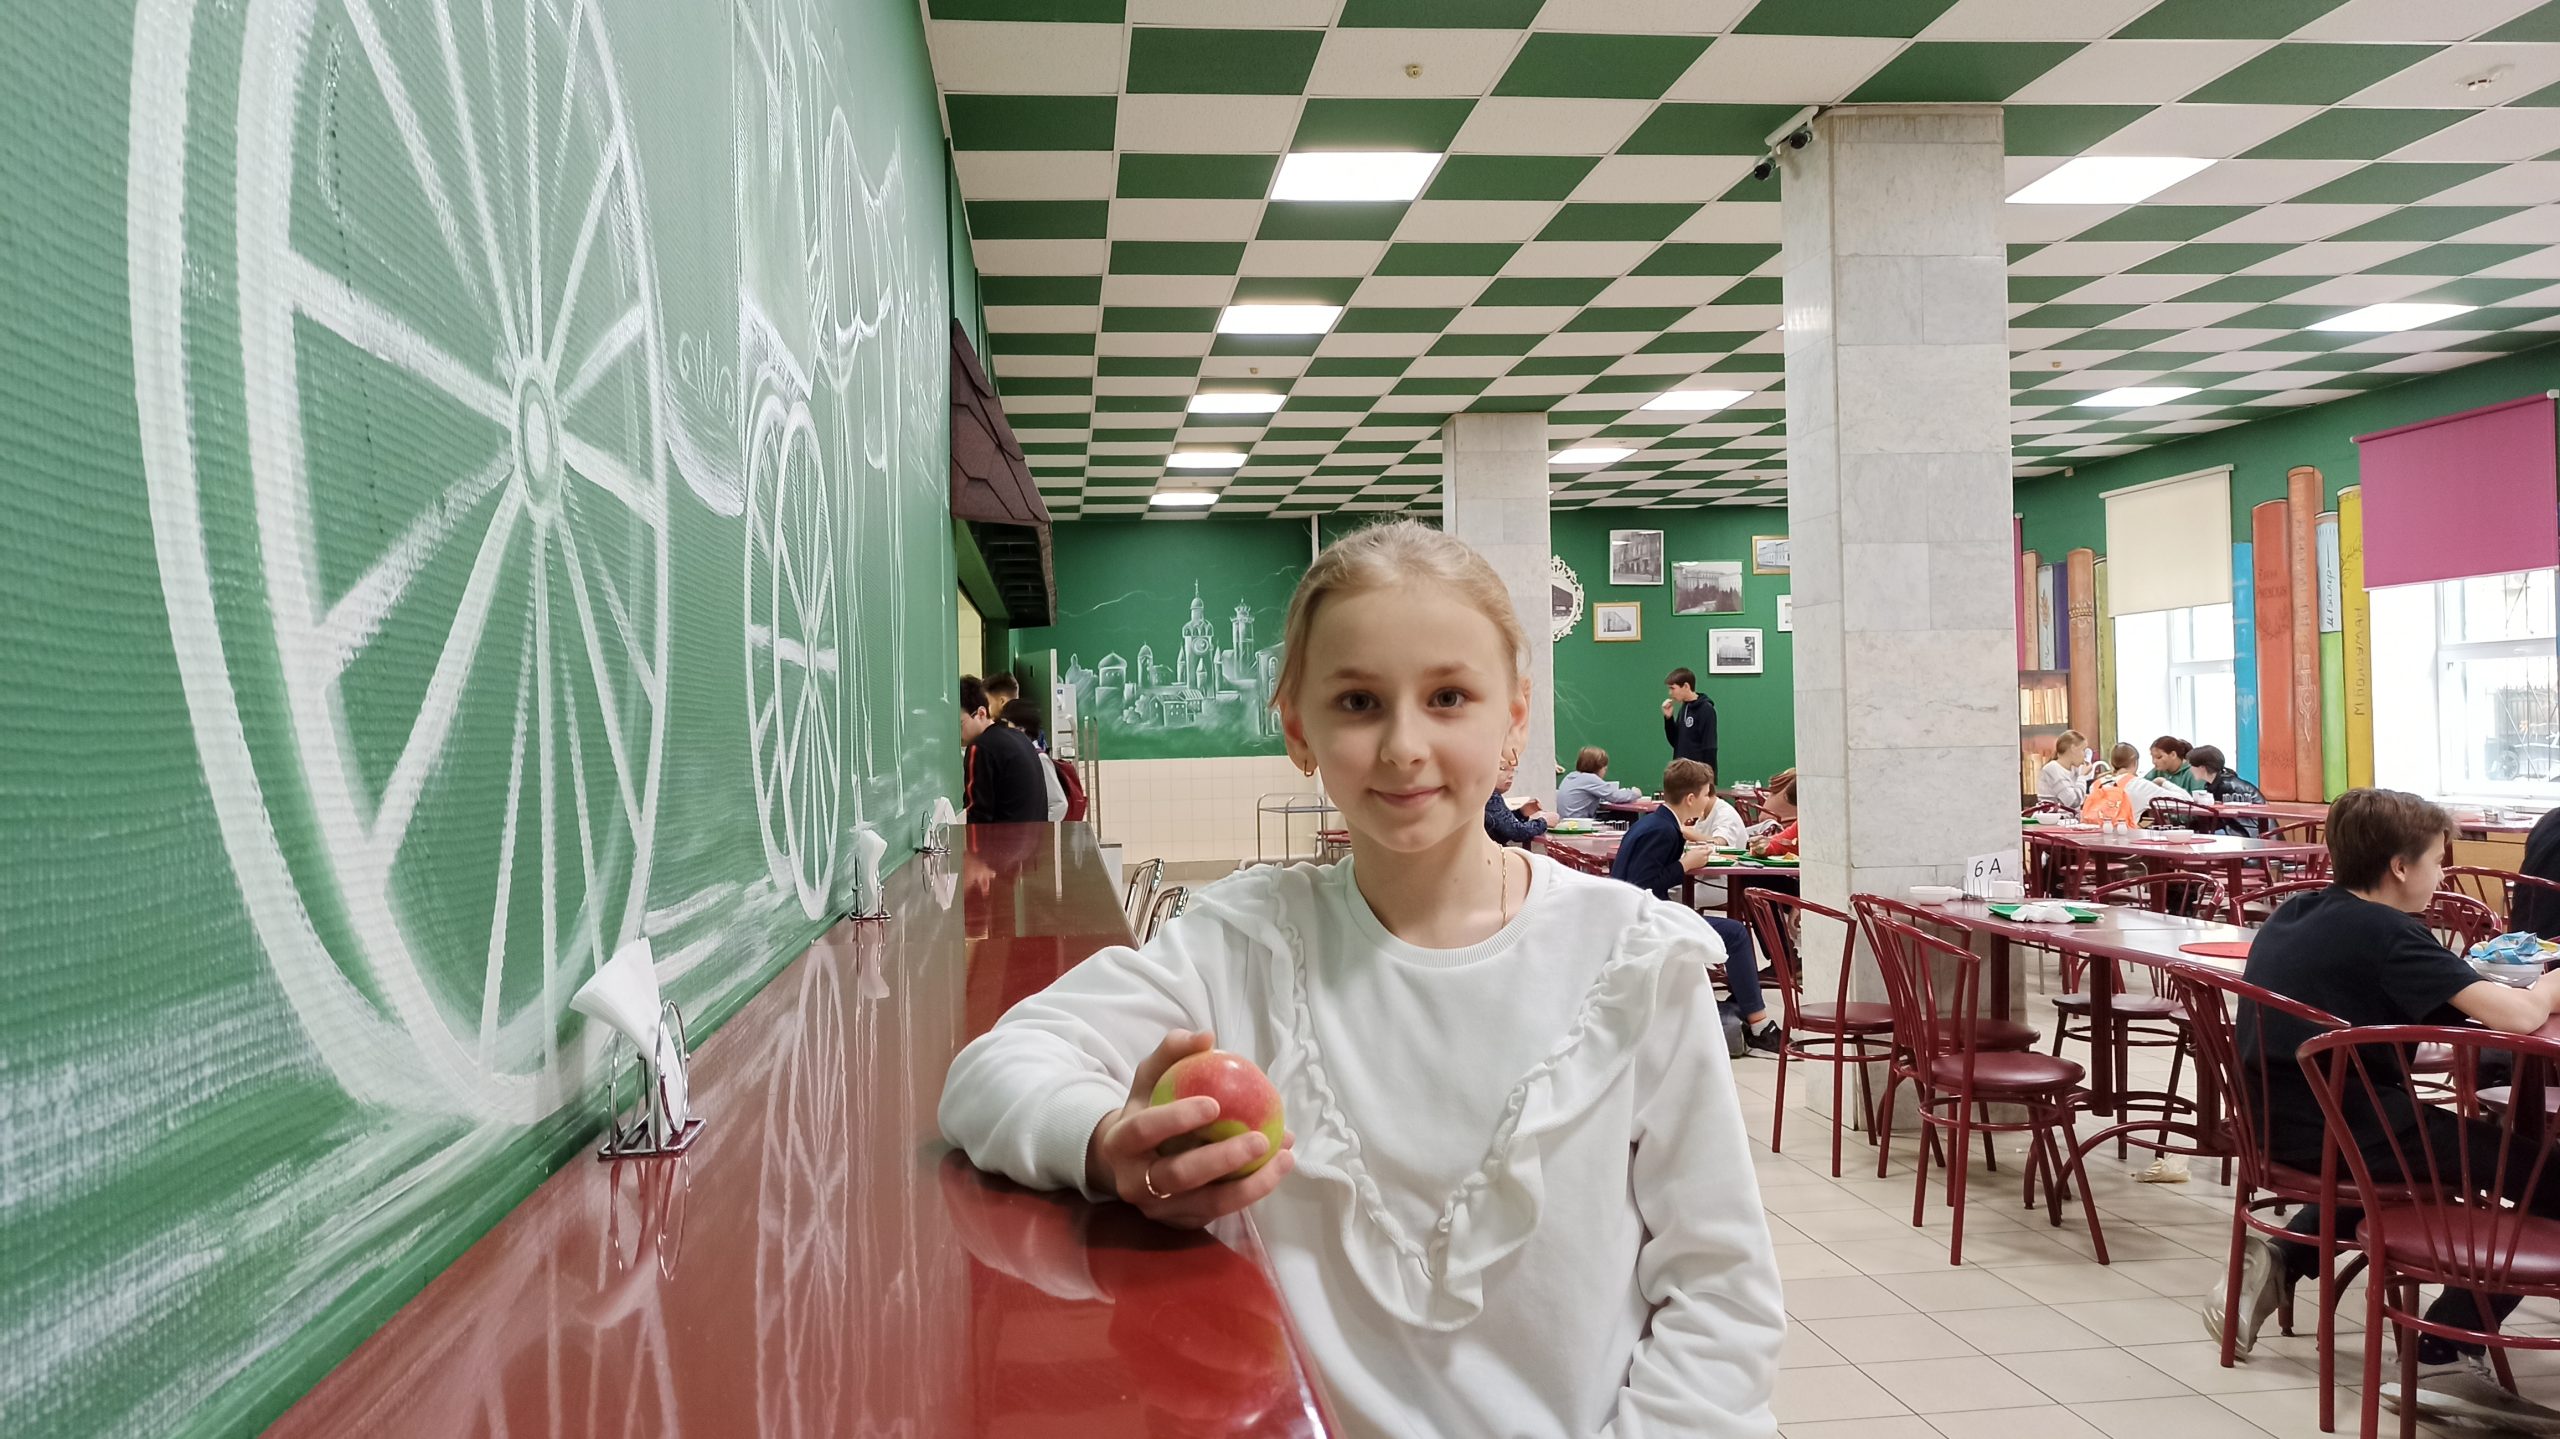 Пятиклассница школы № 1520 Даша Левина с удовольствием обедает в школьной столовой, где представлены блюда на любой вкус. Фото: пресс-служба ДОНМ